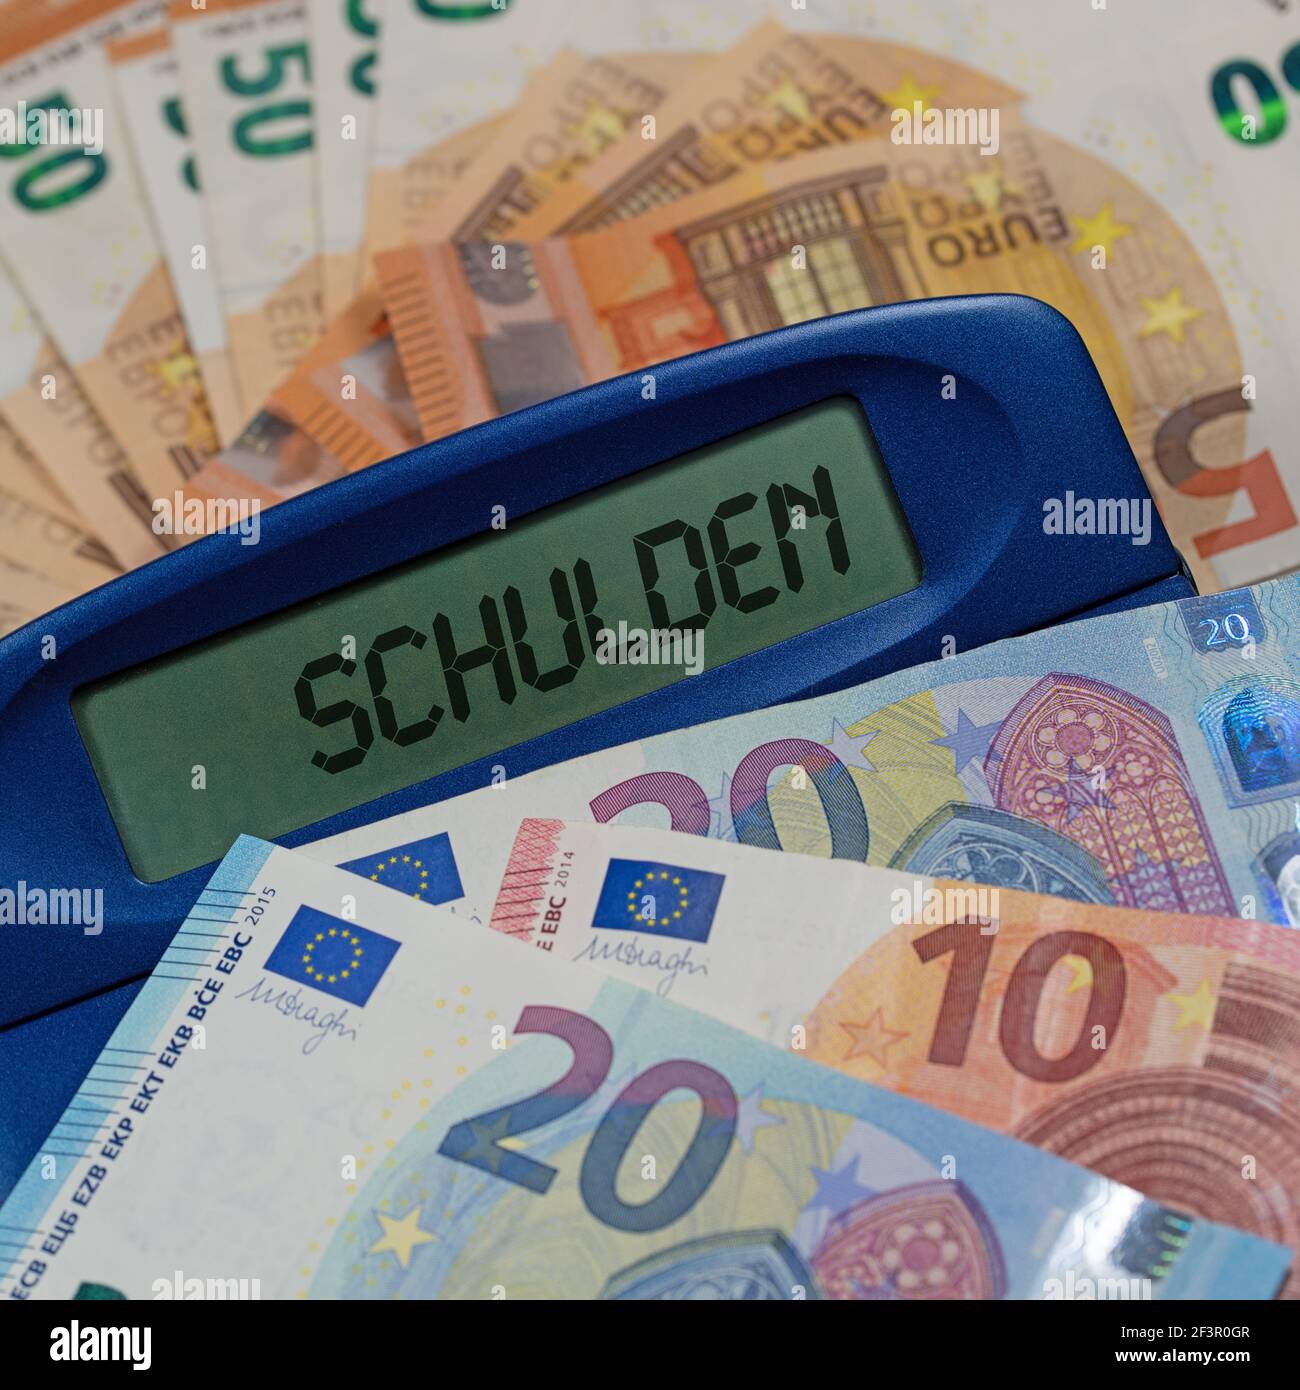 Calculatrice de poche avec le texte « Schulden » sur les factures, traduction « debt » Banque D'Images